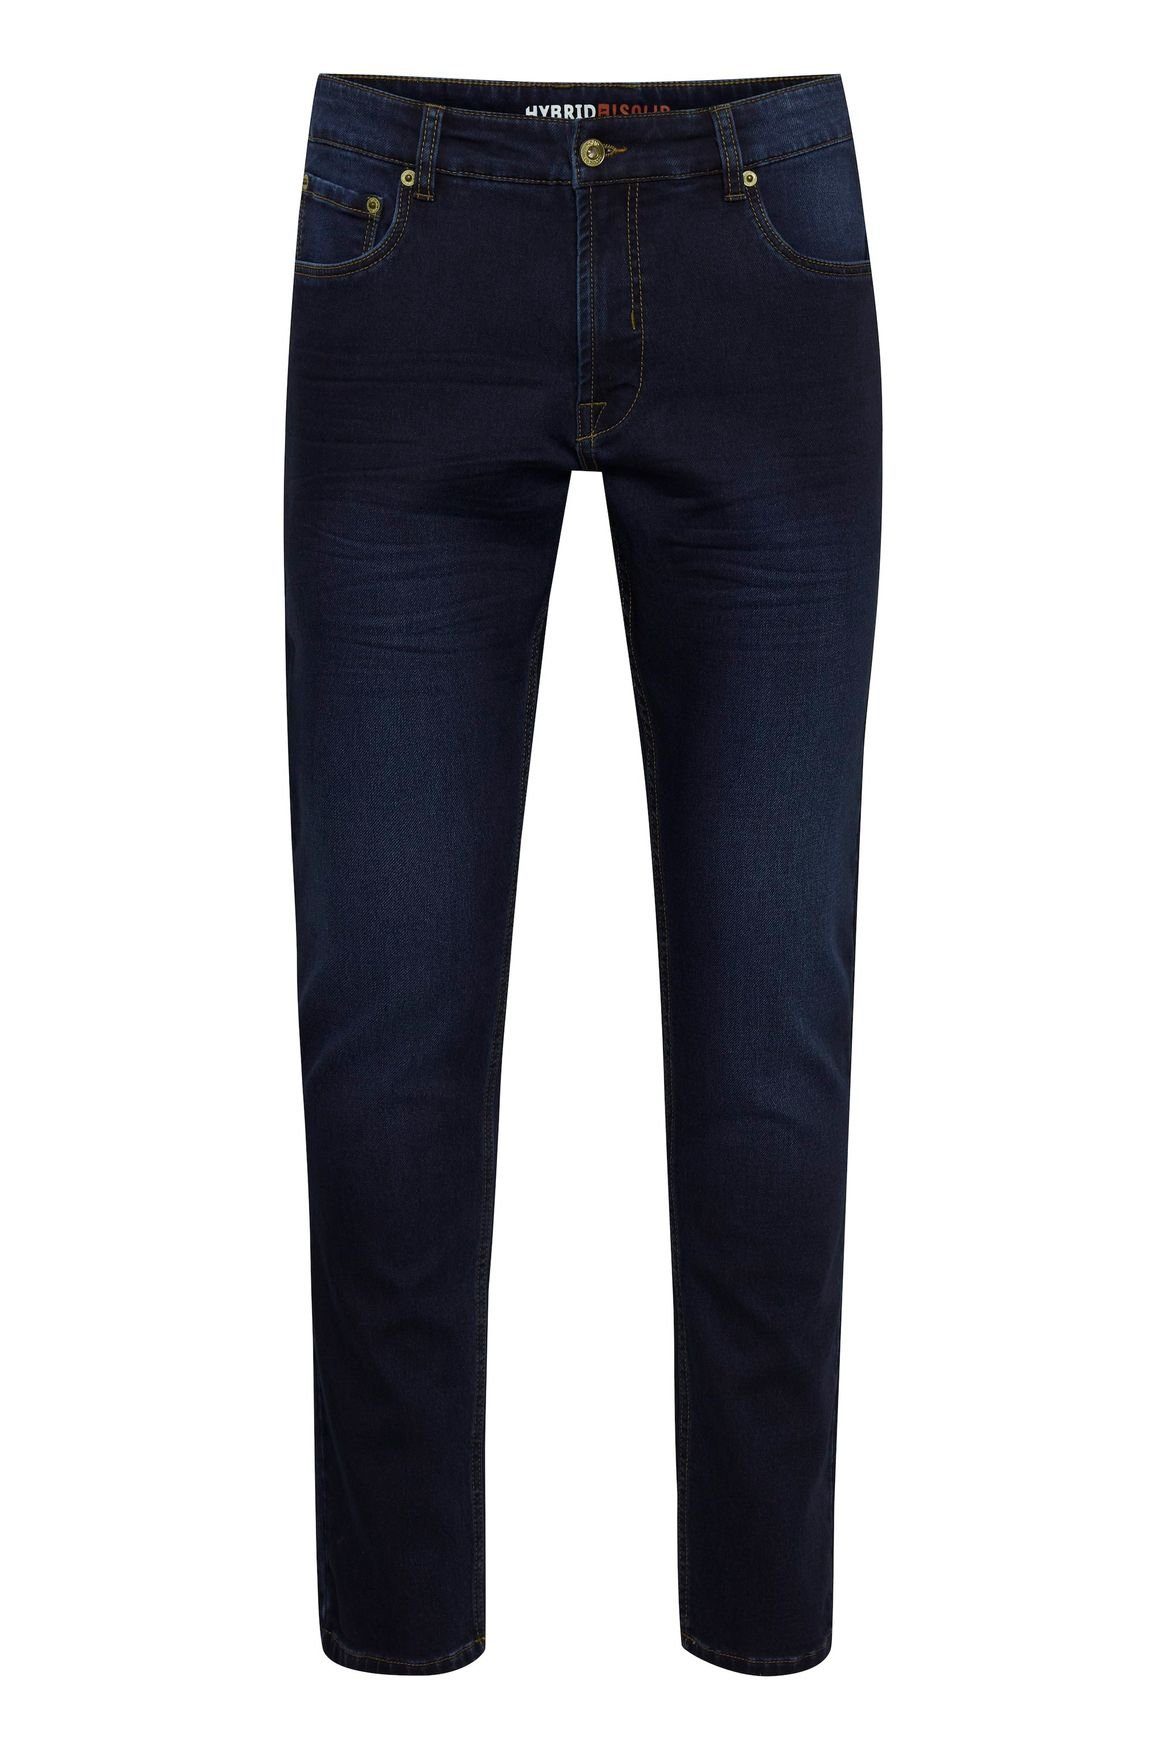 !Solid in Basic Pants SDTot Denim Dunkelblau (1-tlg) Slim-fit-Jeans Fit Jeans Slim Black 4121